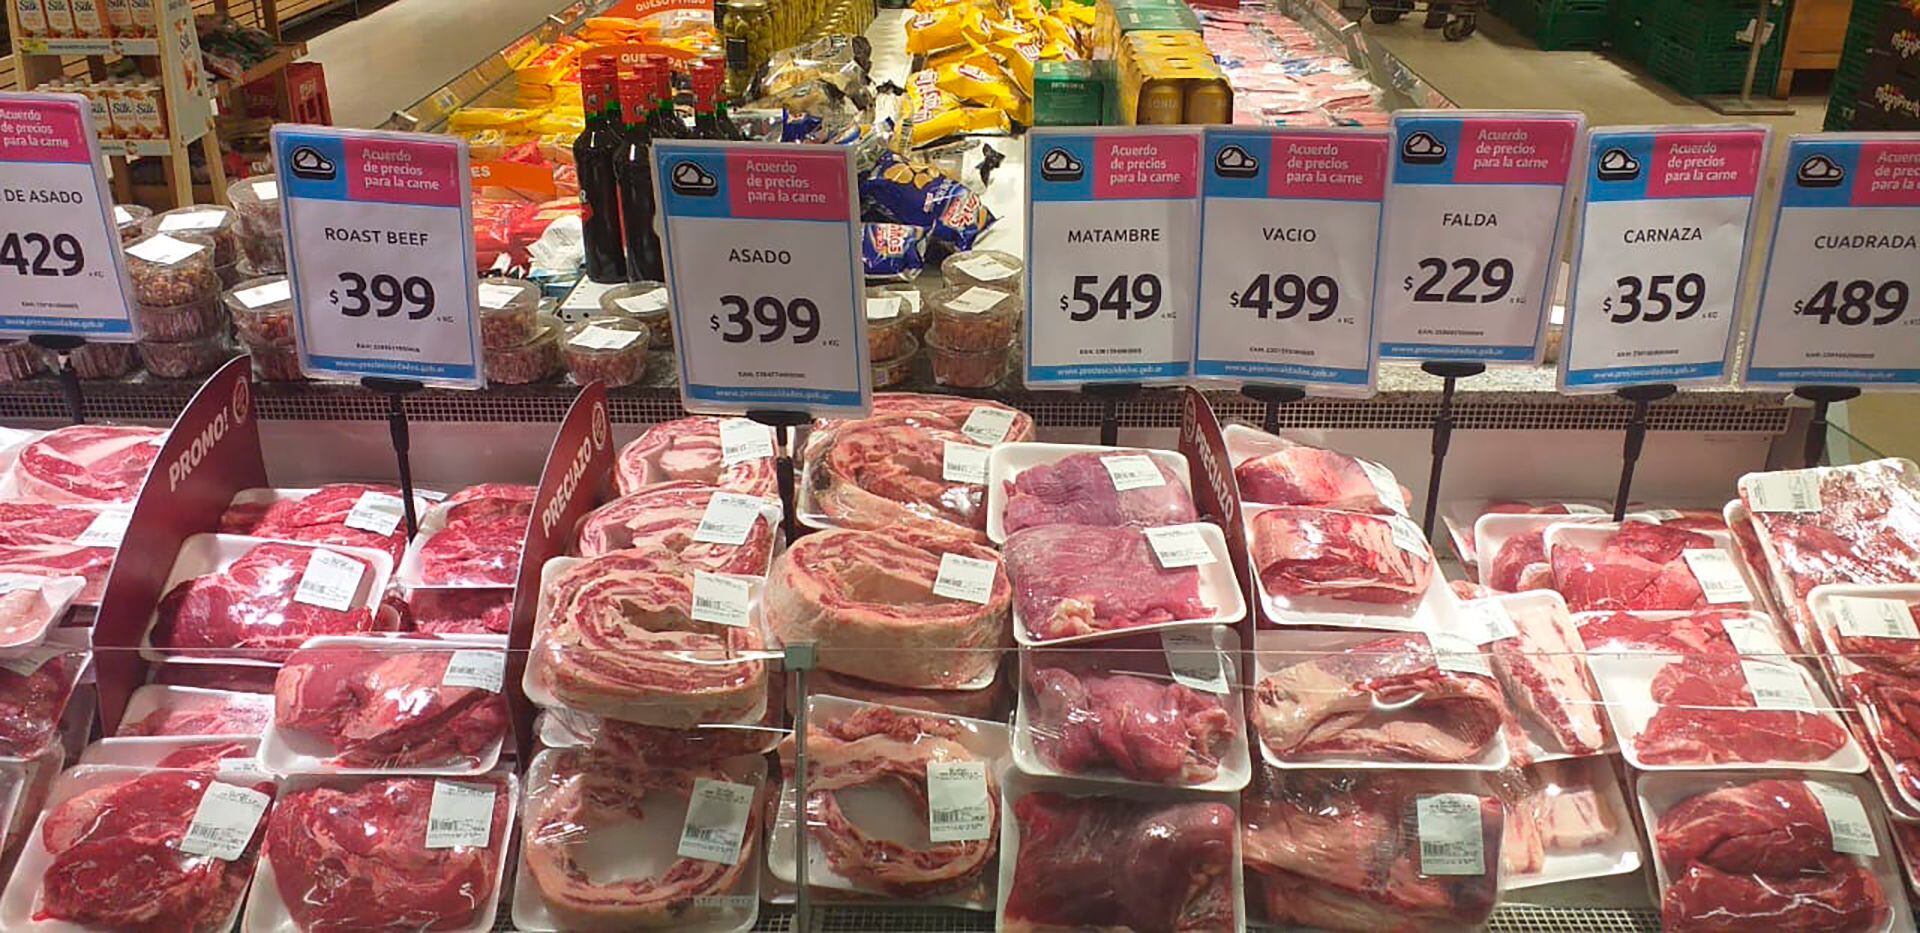 Carne precios populares supermercados frigoríficos